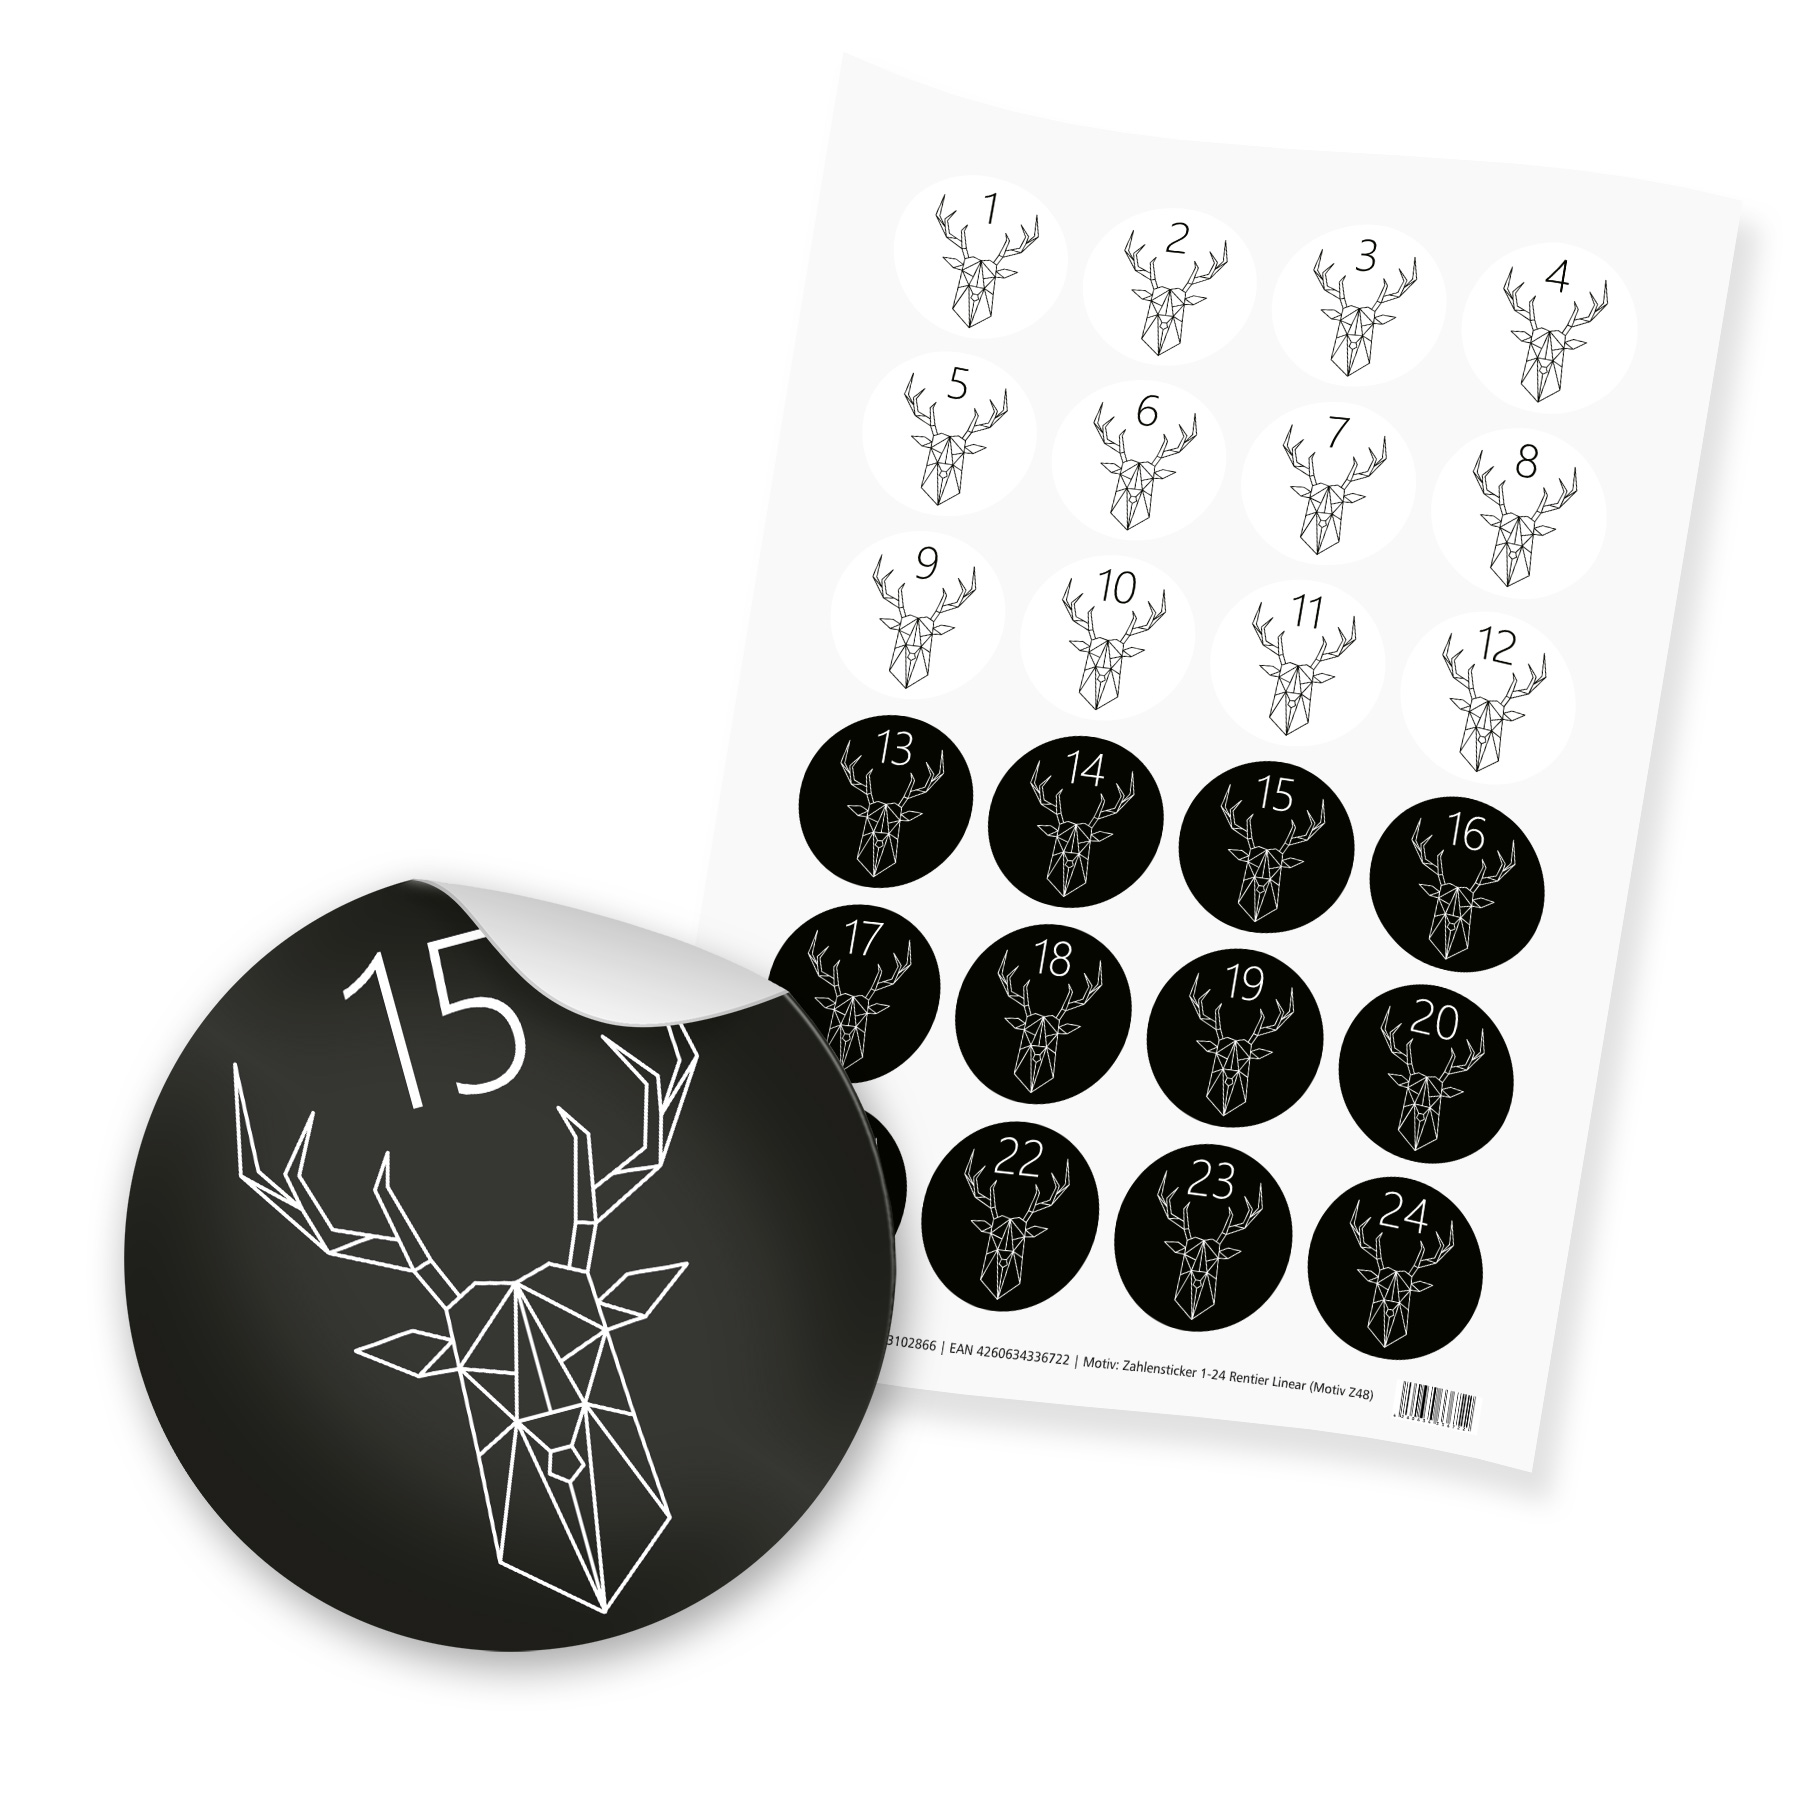 5er Pack Aufkleber Adventskalenderzahlen Schwarz/Weiß 1 - 24 auf Bogen  rund, Ø 40 mm (5 x 24 Zahlen) - Aufkleber-Shop